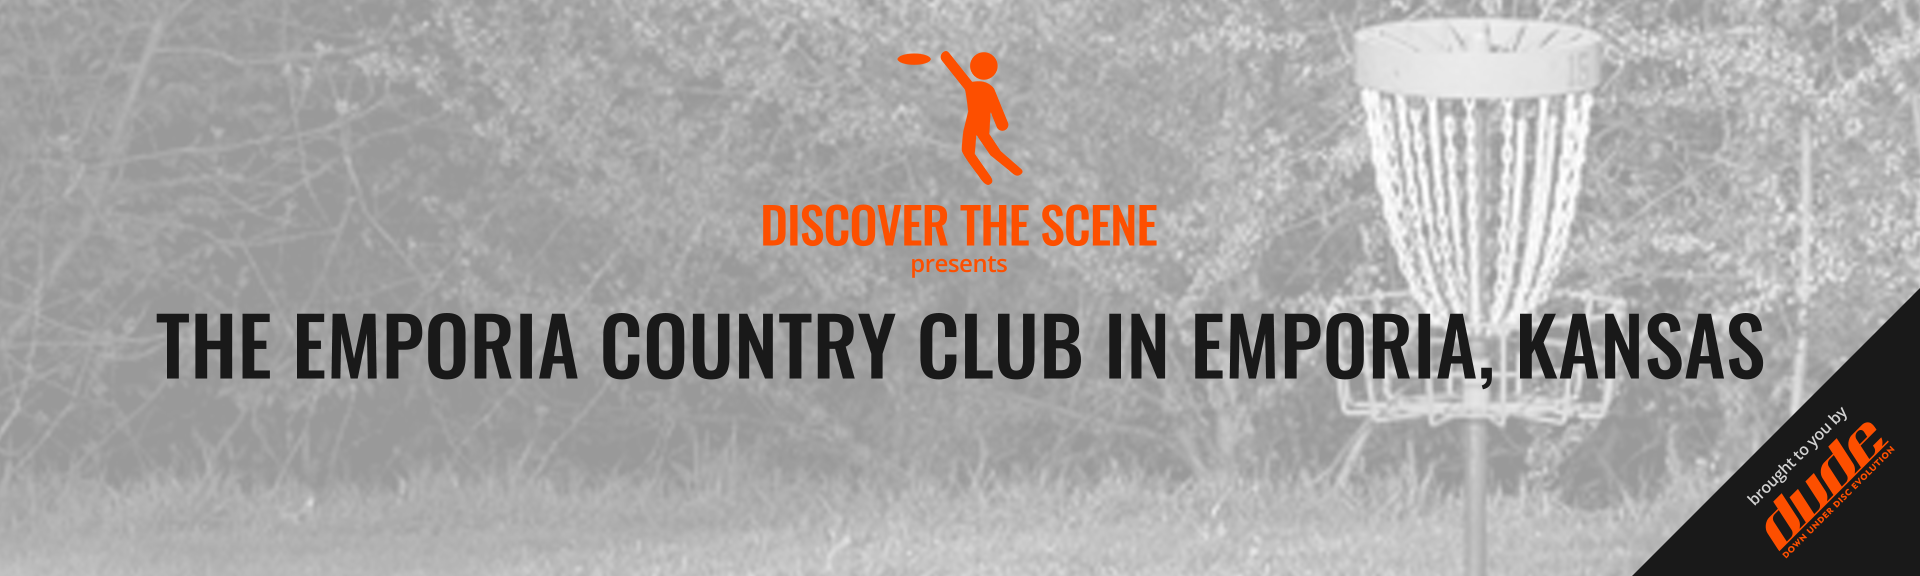 Dude Clothing Discover the scene Country Club Emporia Kansas